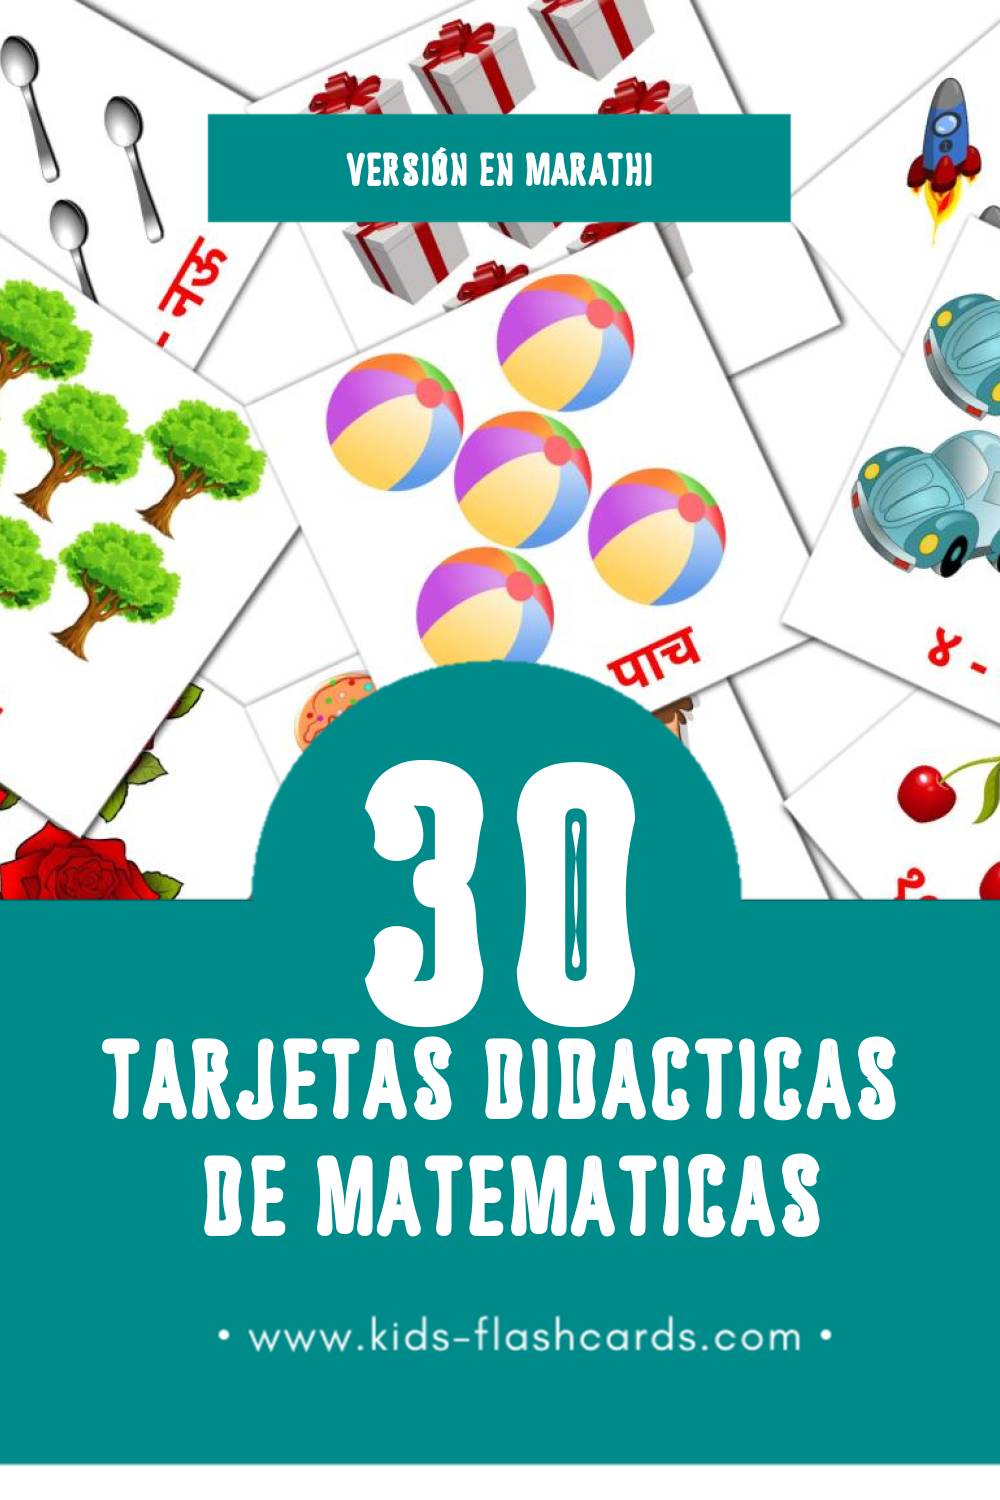 Tarjetas visuales de गणित  para niños pequeños (30 tarjetas en Marathi)